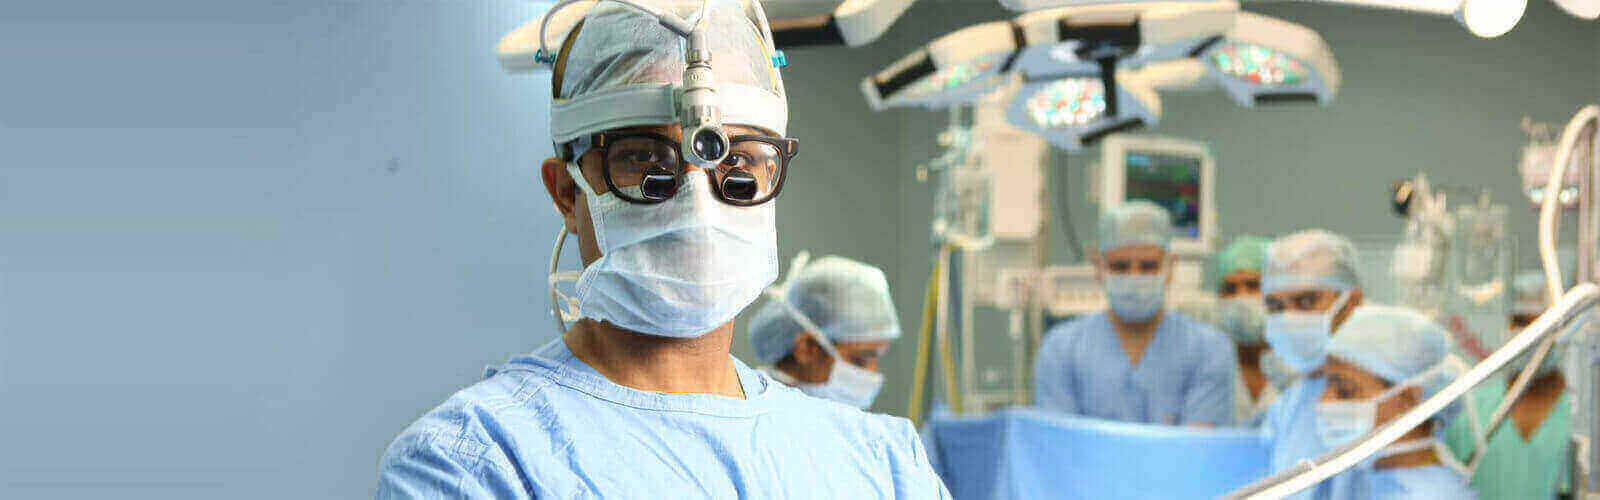 Heart Bypass Surgery in Hong Kong